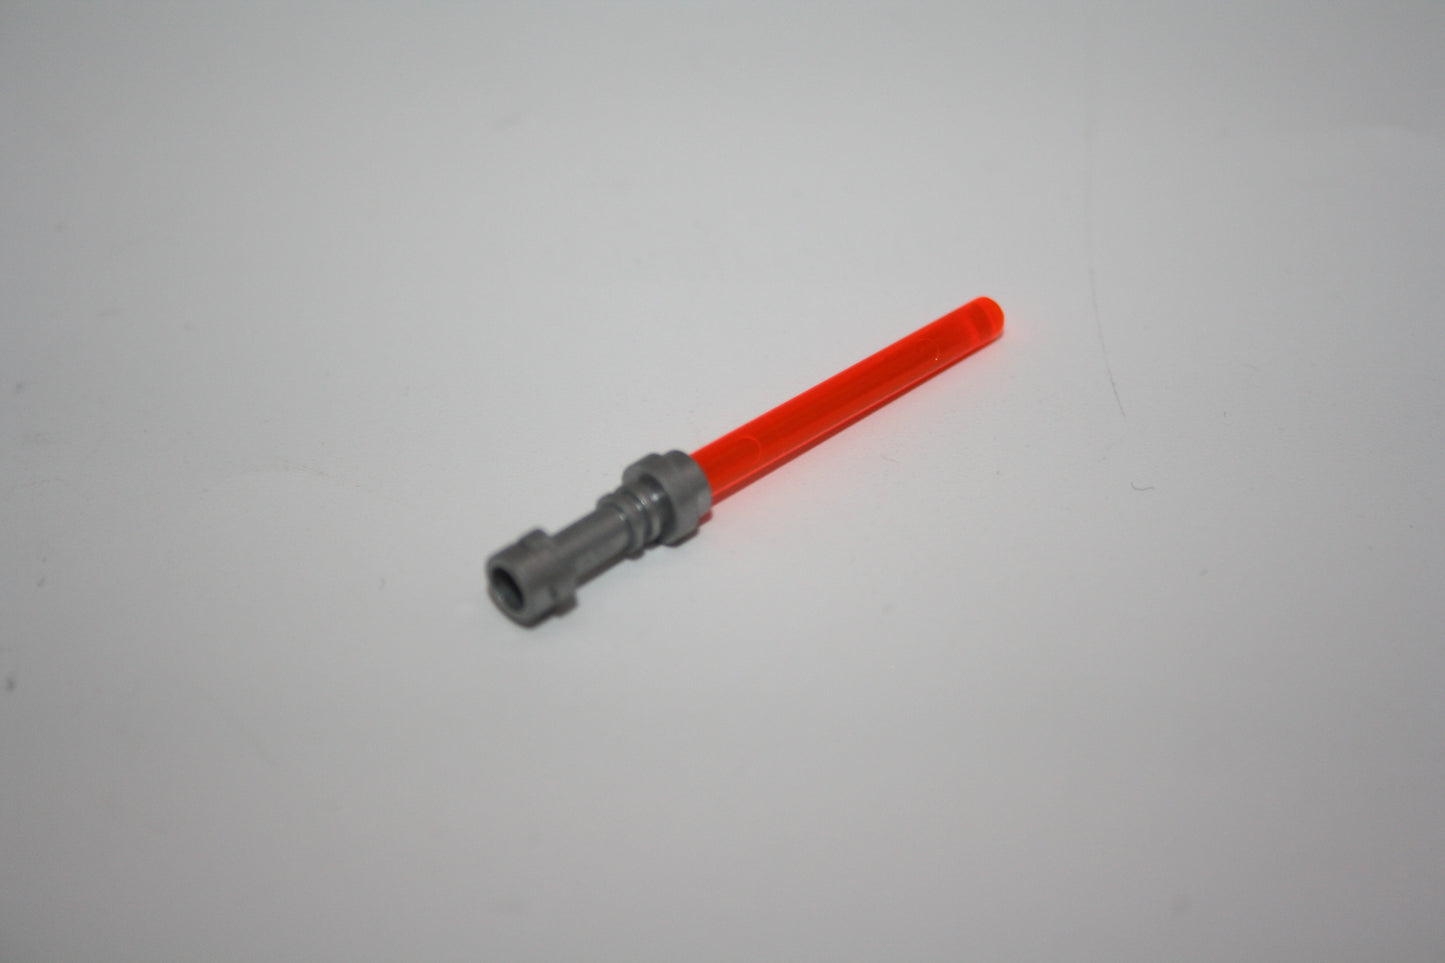 LEGO®- Lichtschwert/Laserschwert - versch. Farben m. silbernem Griff - 64657/30374 - Waffen - Accessoires/Zubehör